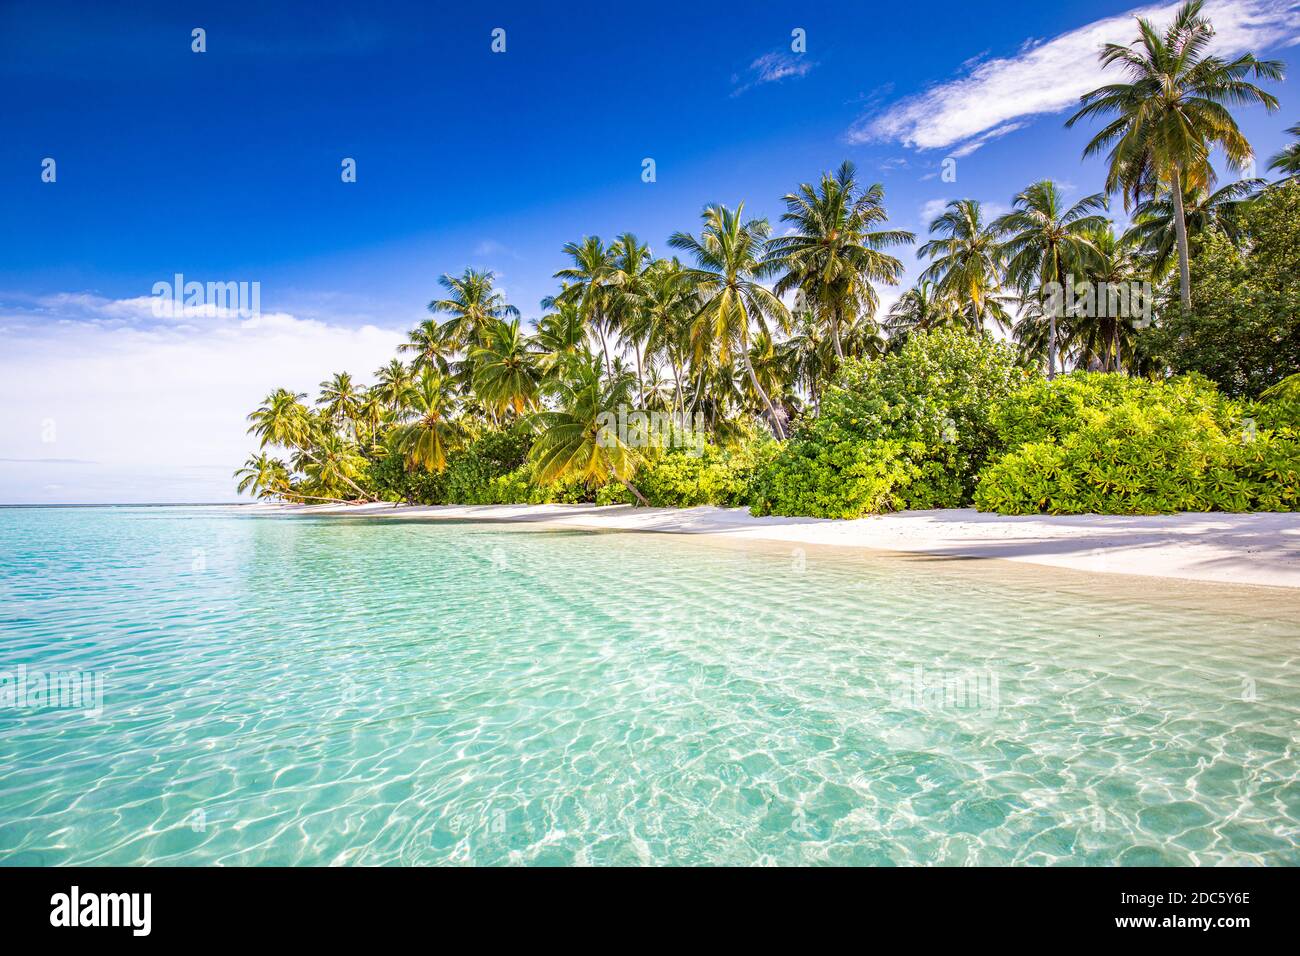 Plage tranquille. Paysage tropical ensoleillé de plage exotique. Concept vacances d'été. Destination de voyage de luxe, nature idyllique, palmiers, mer Banque D'Images